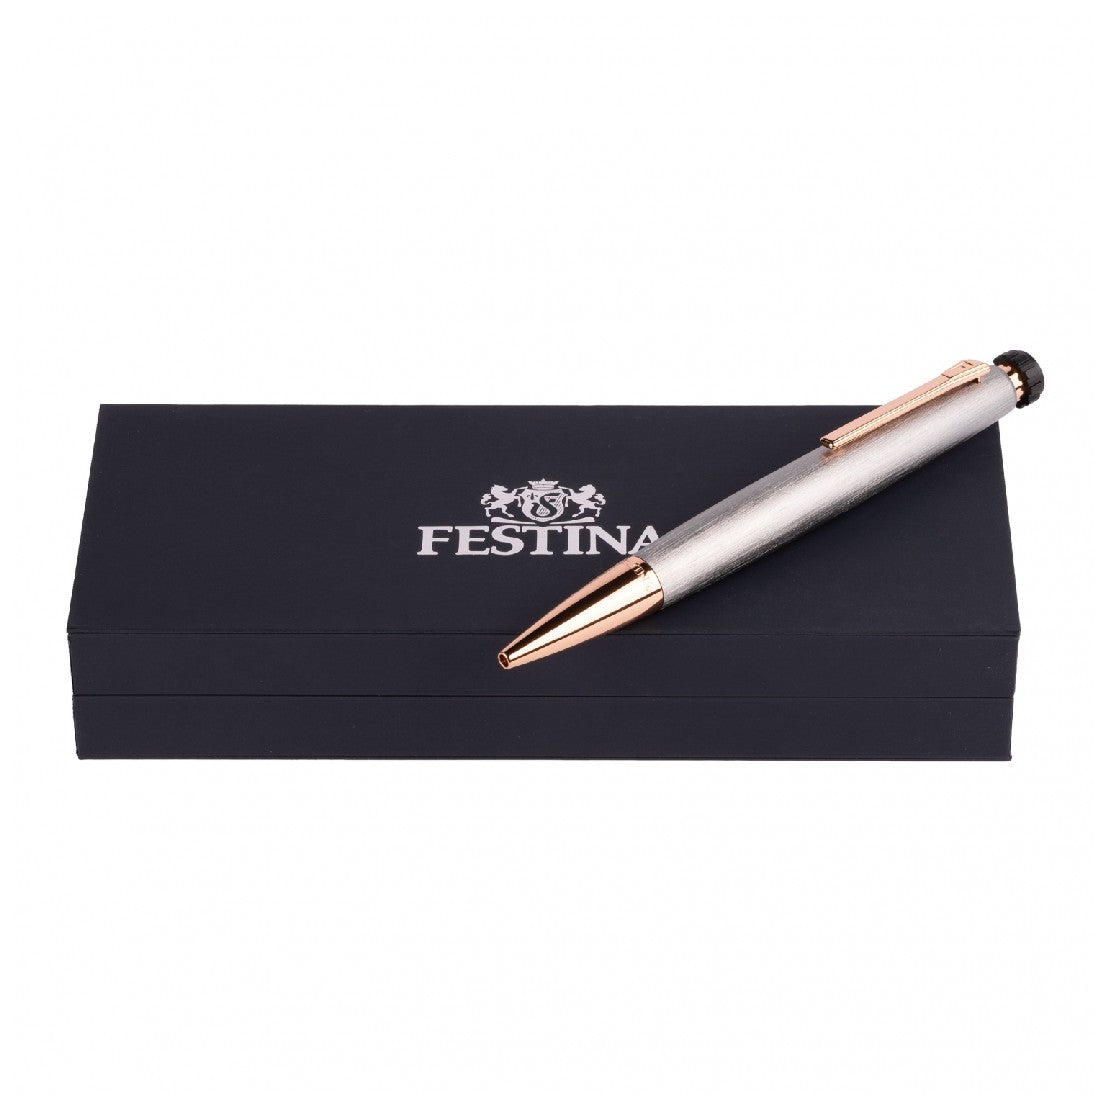 Festina Rose Gold and Chrome Pen - FSPEN-0004